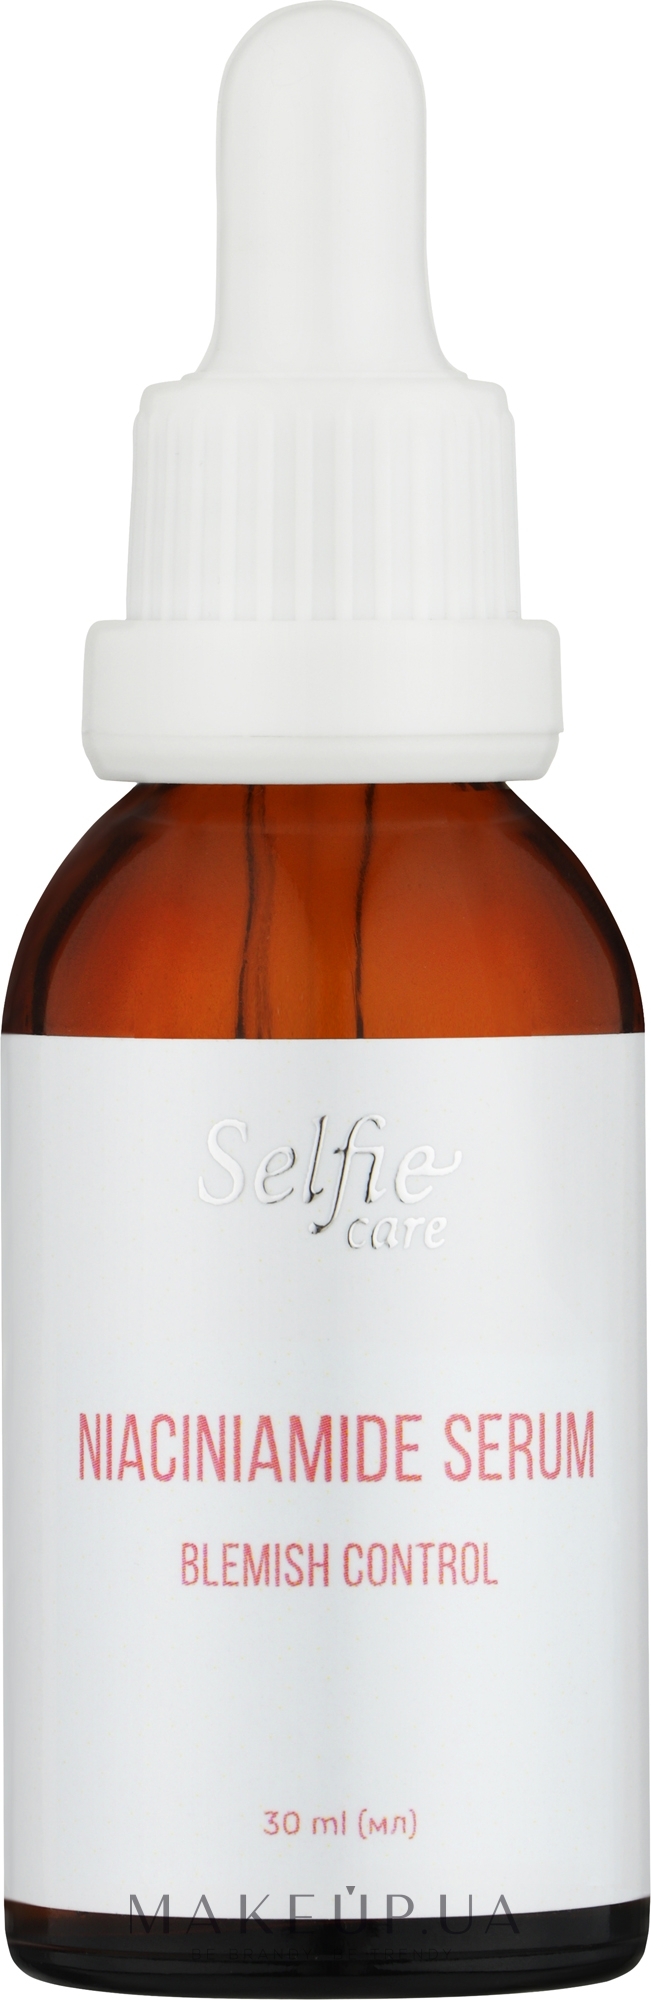 Сыворотка для лица с ниацинамидом - Selfie Care Niaciniamide Serum Blemish Control — фото 30ml